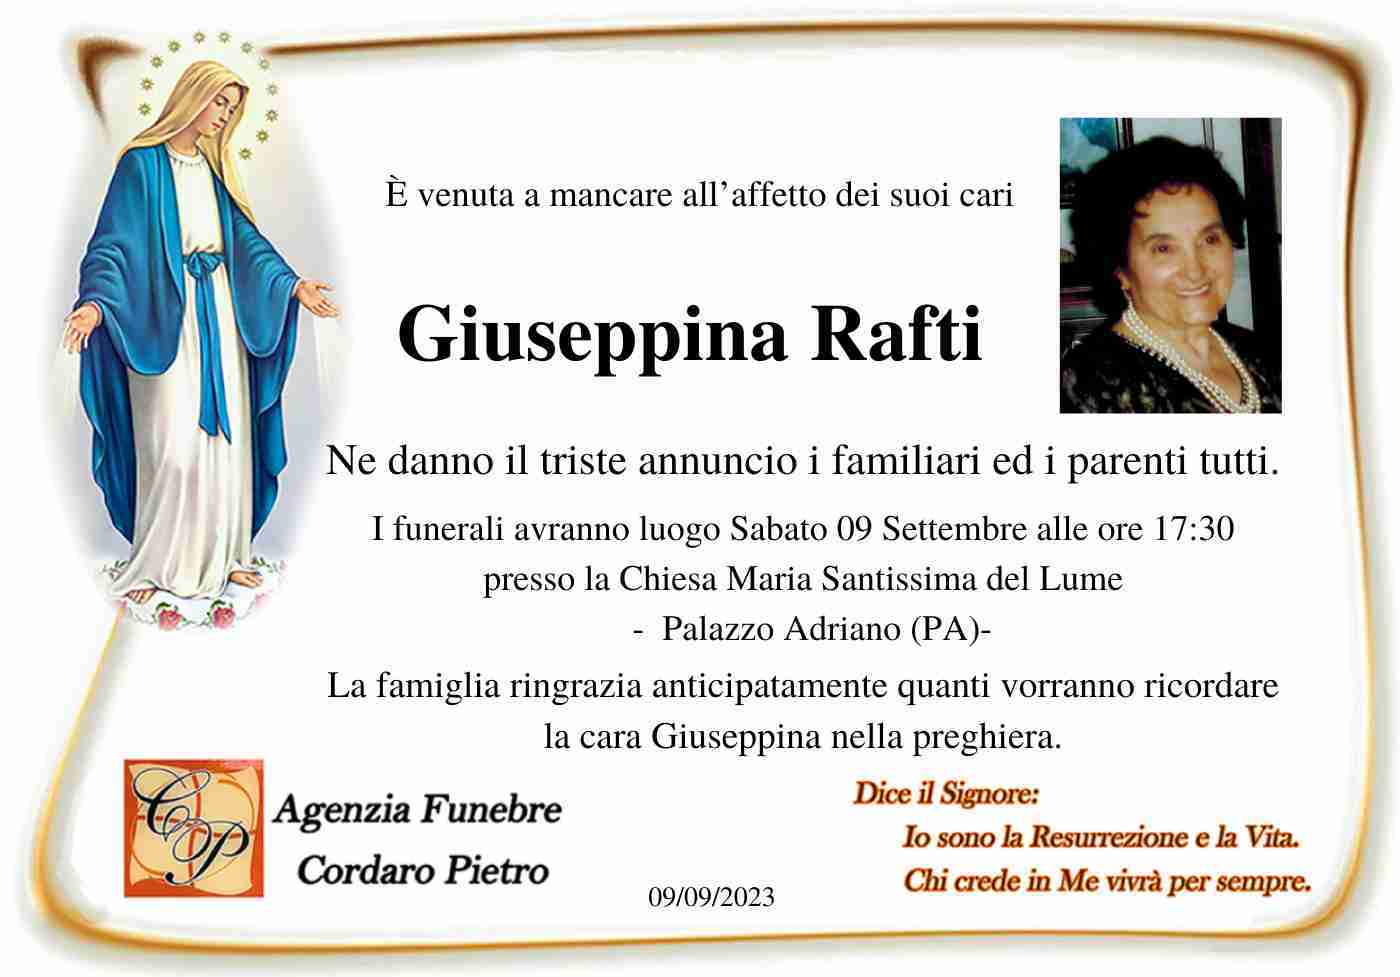 Giuseppina Rafti